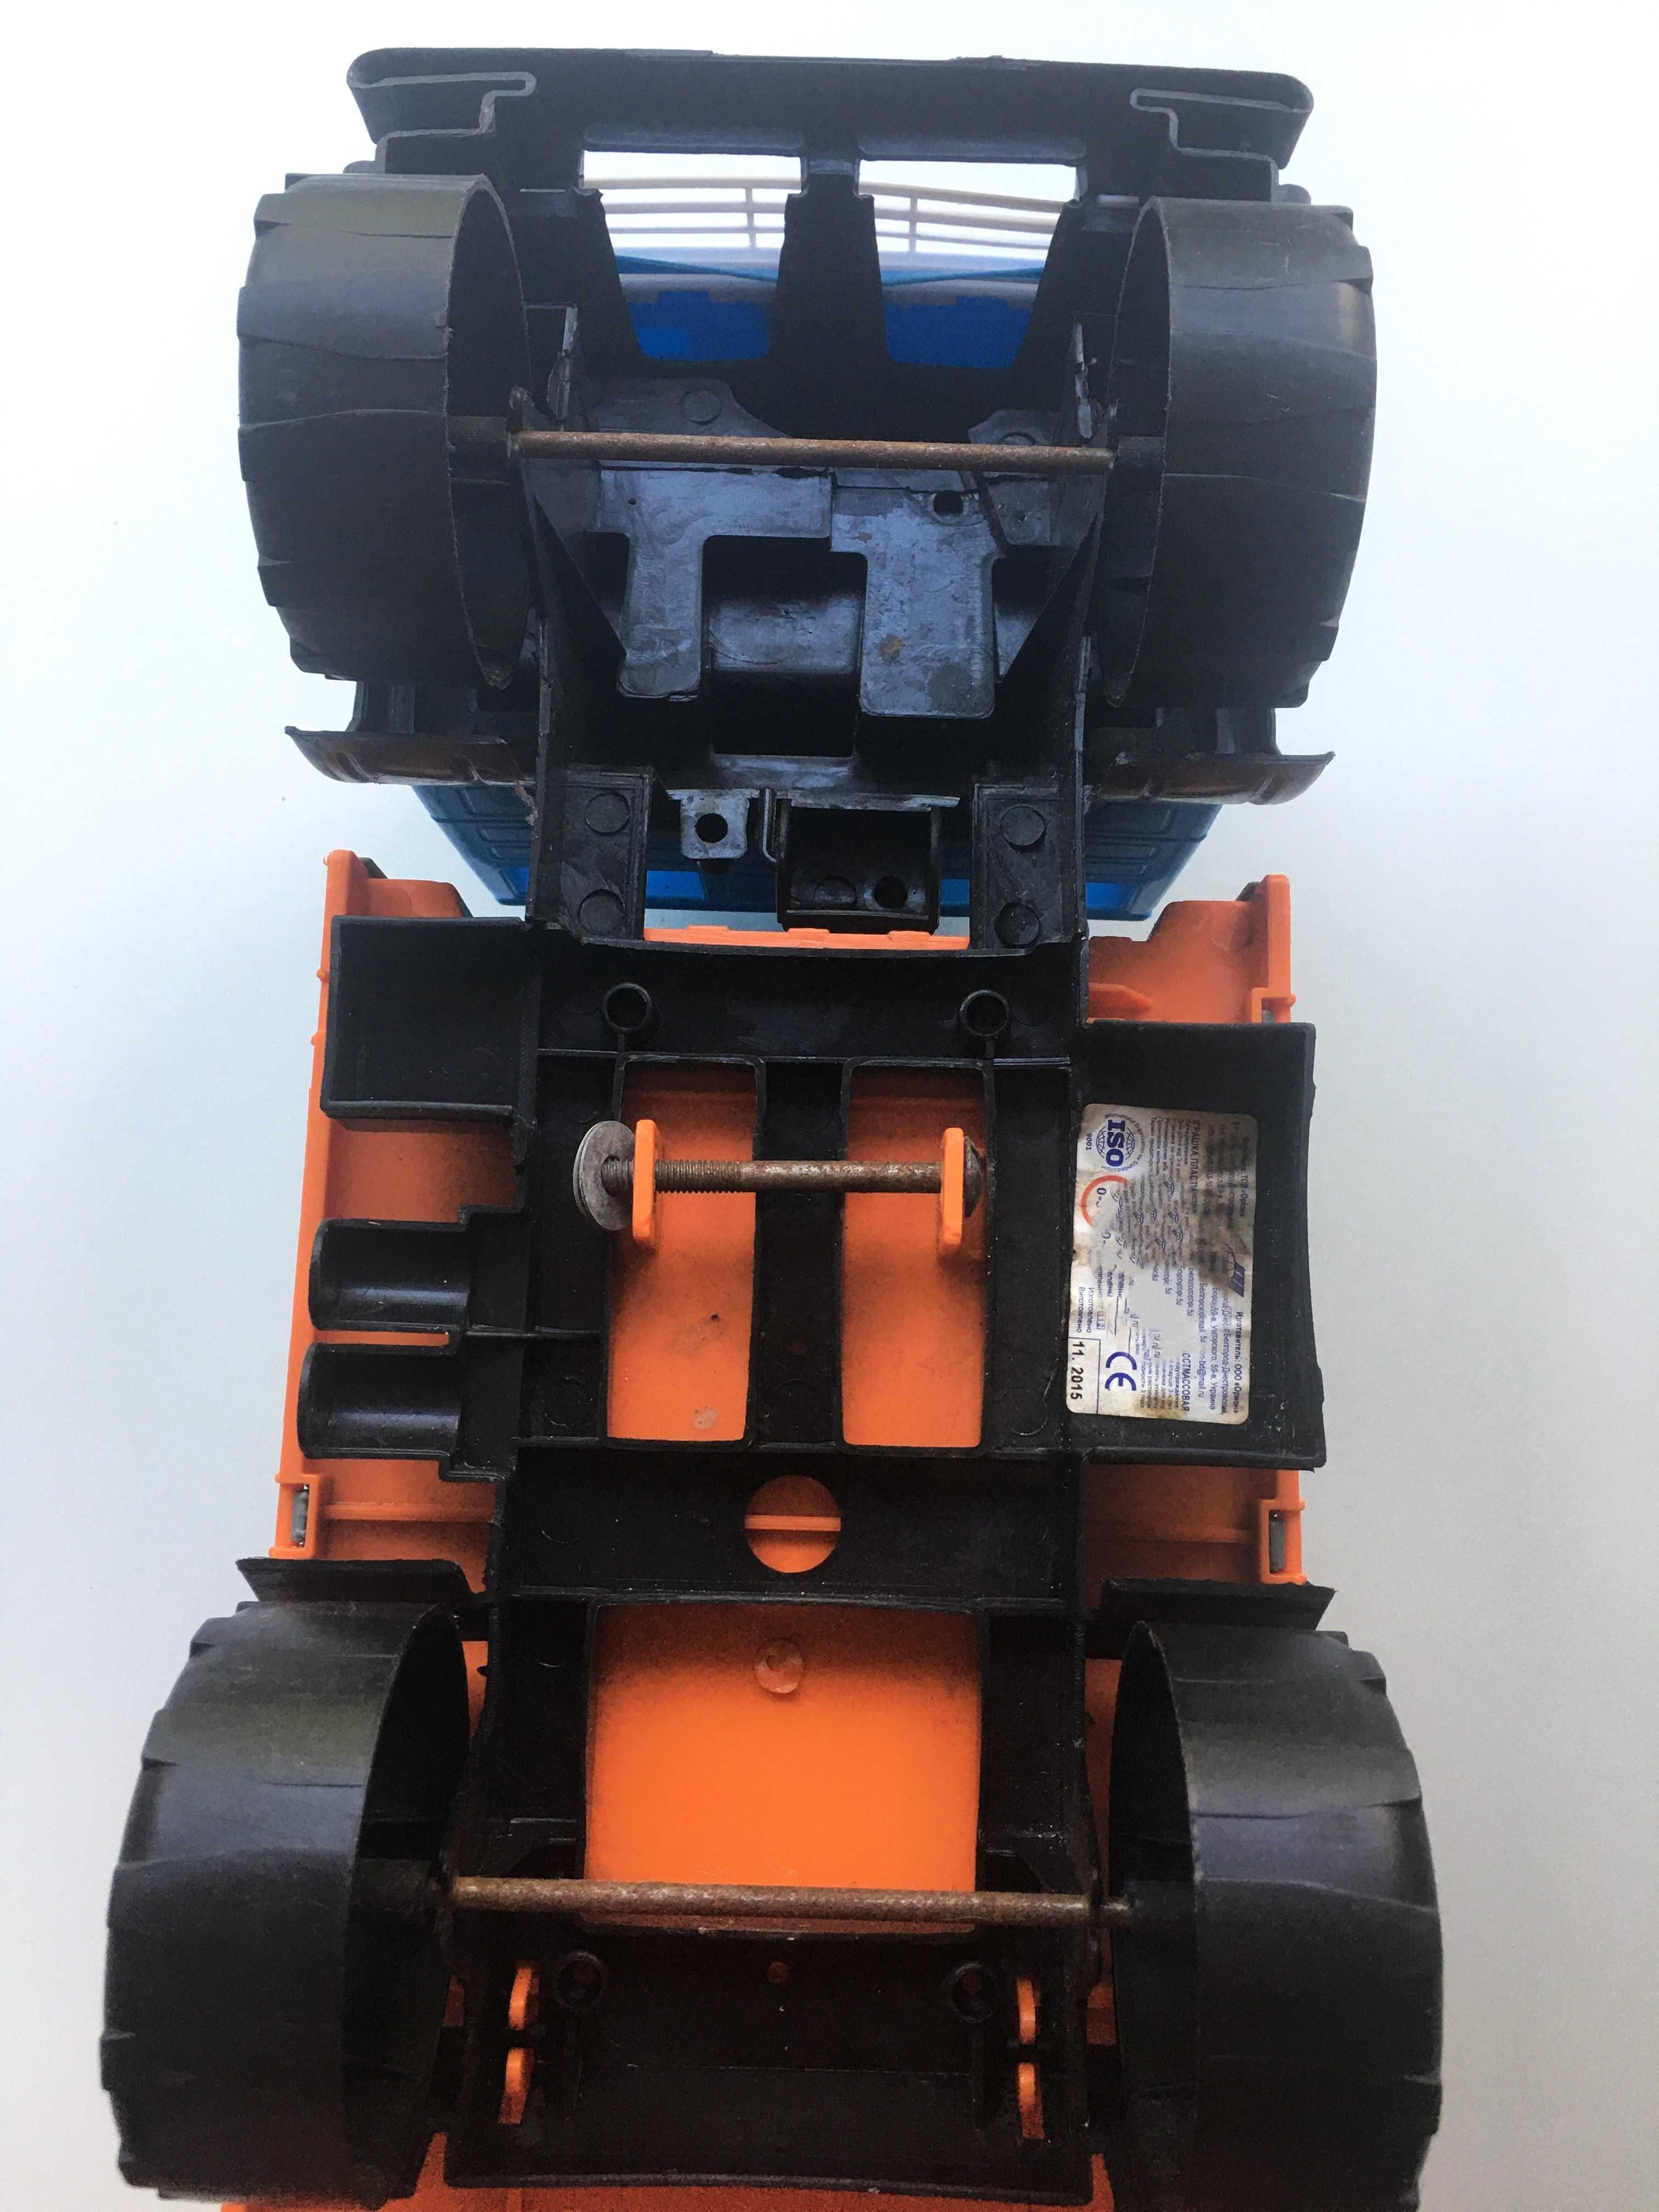 Іграшка Камаз сміттєвоз великий зі сміттєвим баком Orion